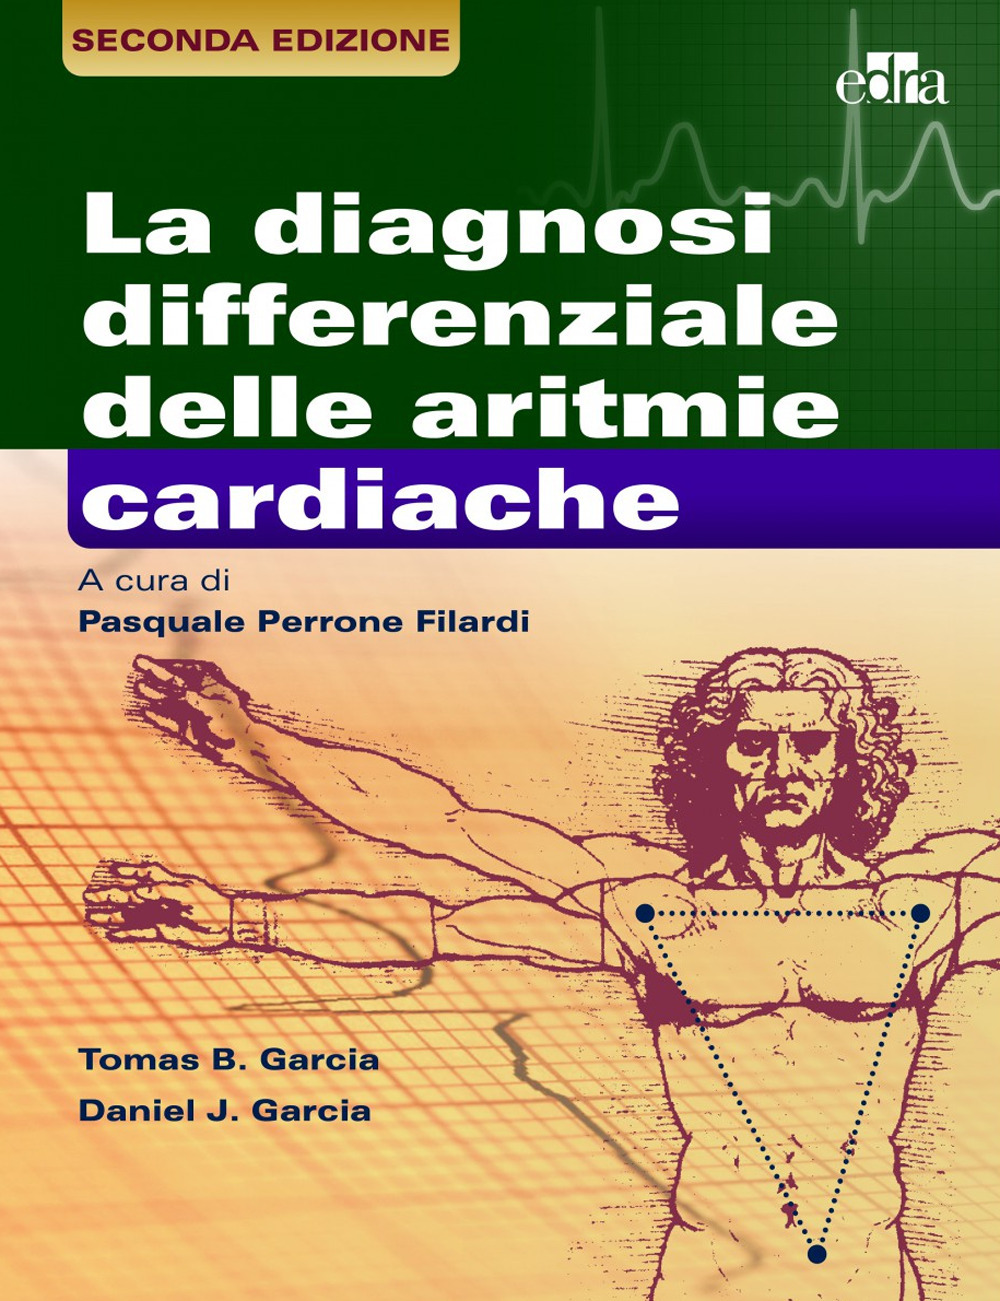 La diagnosi differenziale delle aritmie cardiache